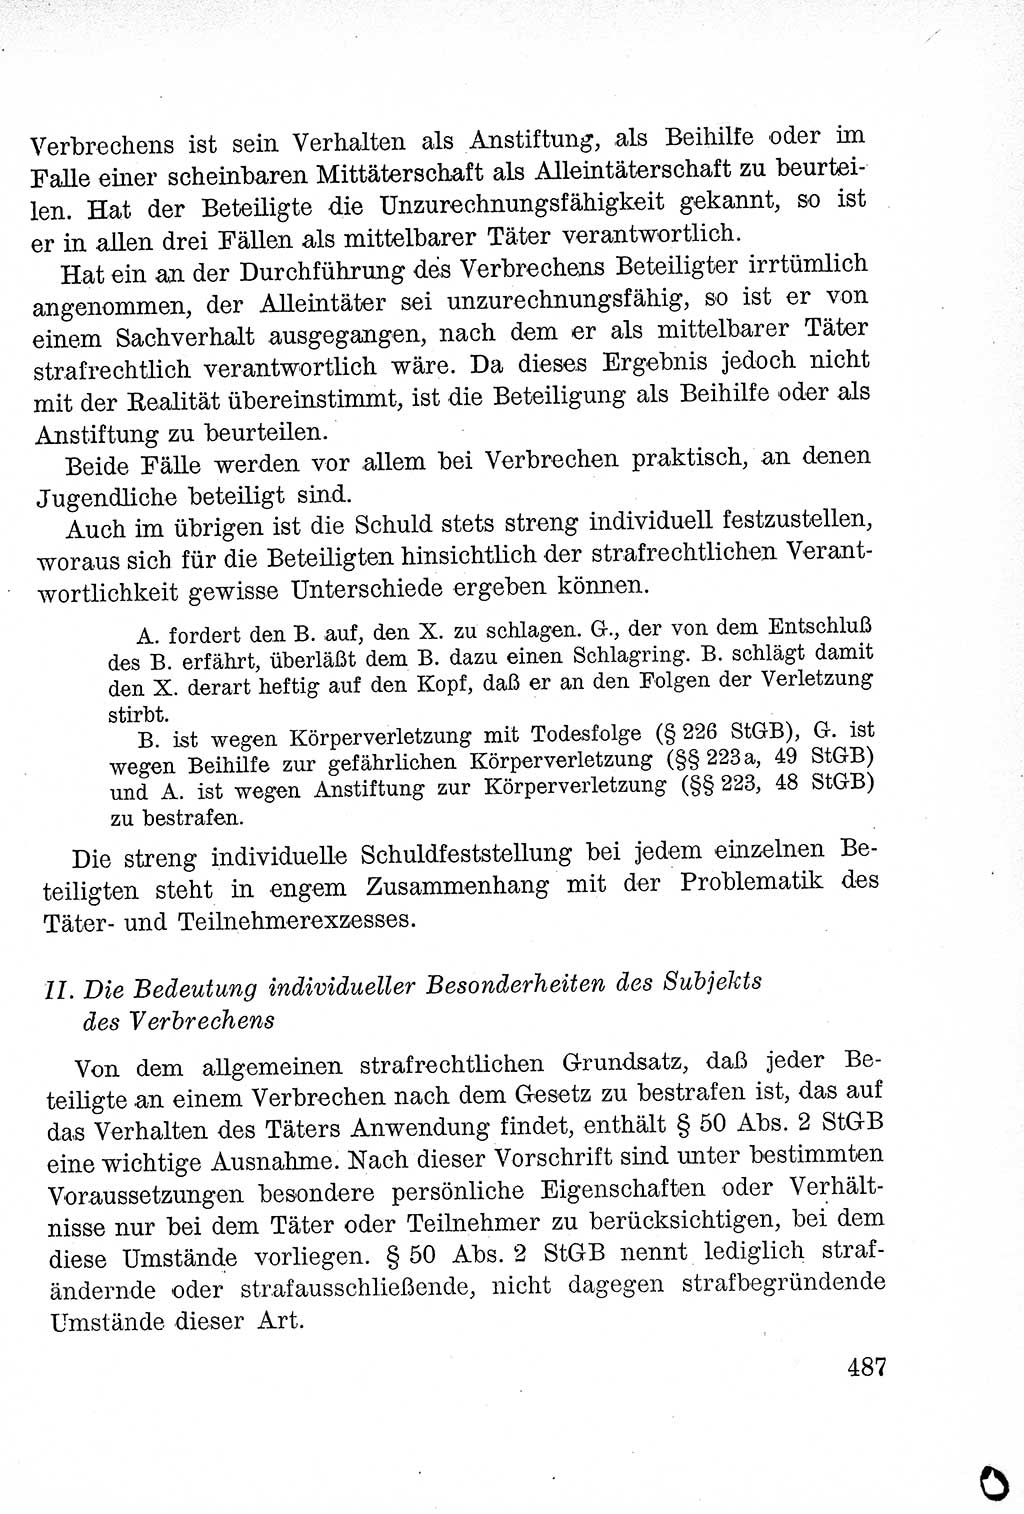 Lehrbuch des Strafrechts der Deutschen Demokratischen Republik (DDR), Allgemeiner Teil 1957, Seite 487 (Lb. Strafr. DDR AT 1957, S. 487)